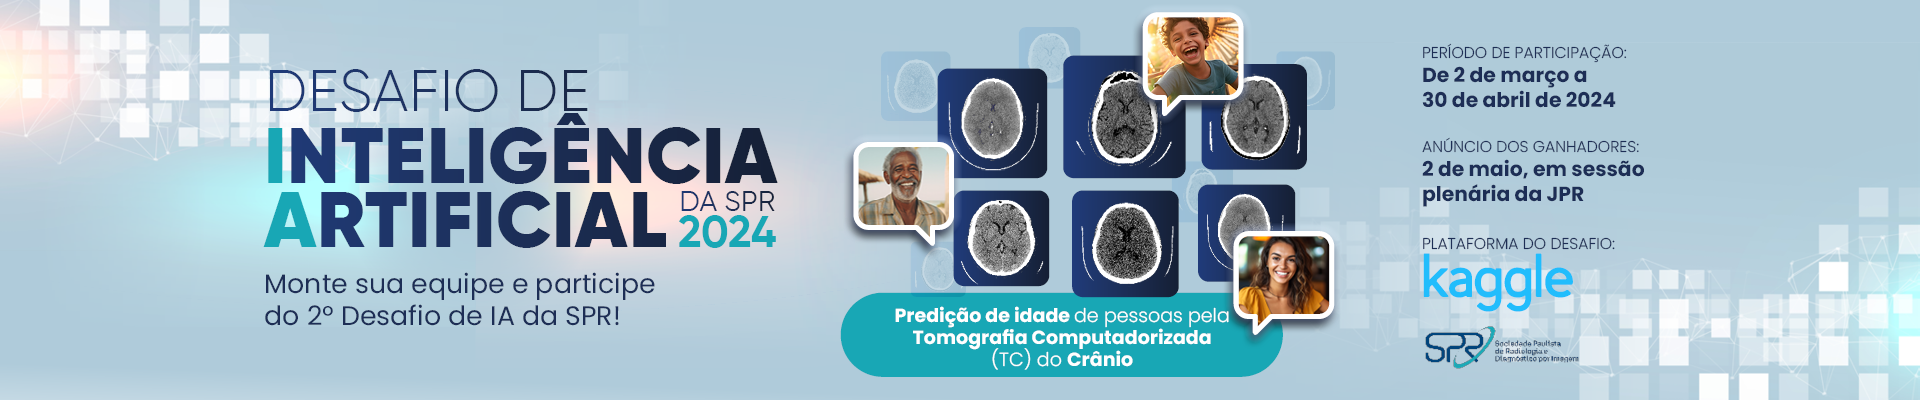 Desafio de Inteligência Artificial - Predição da idade de pessoas a partir de Tomografias Computadorizadas (TC) do Crânio.